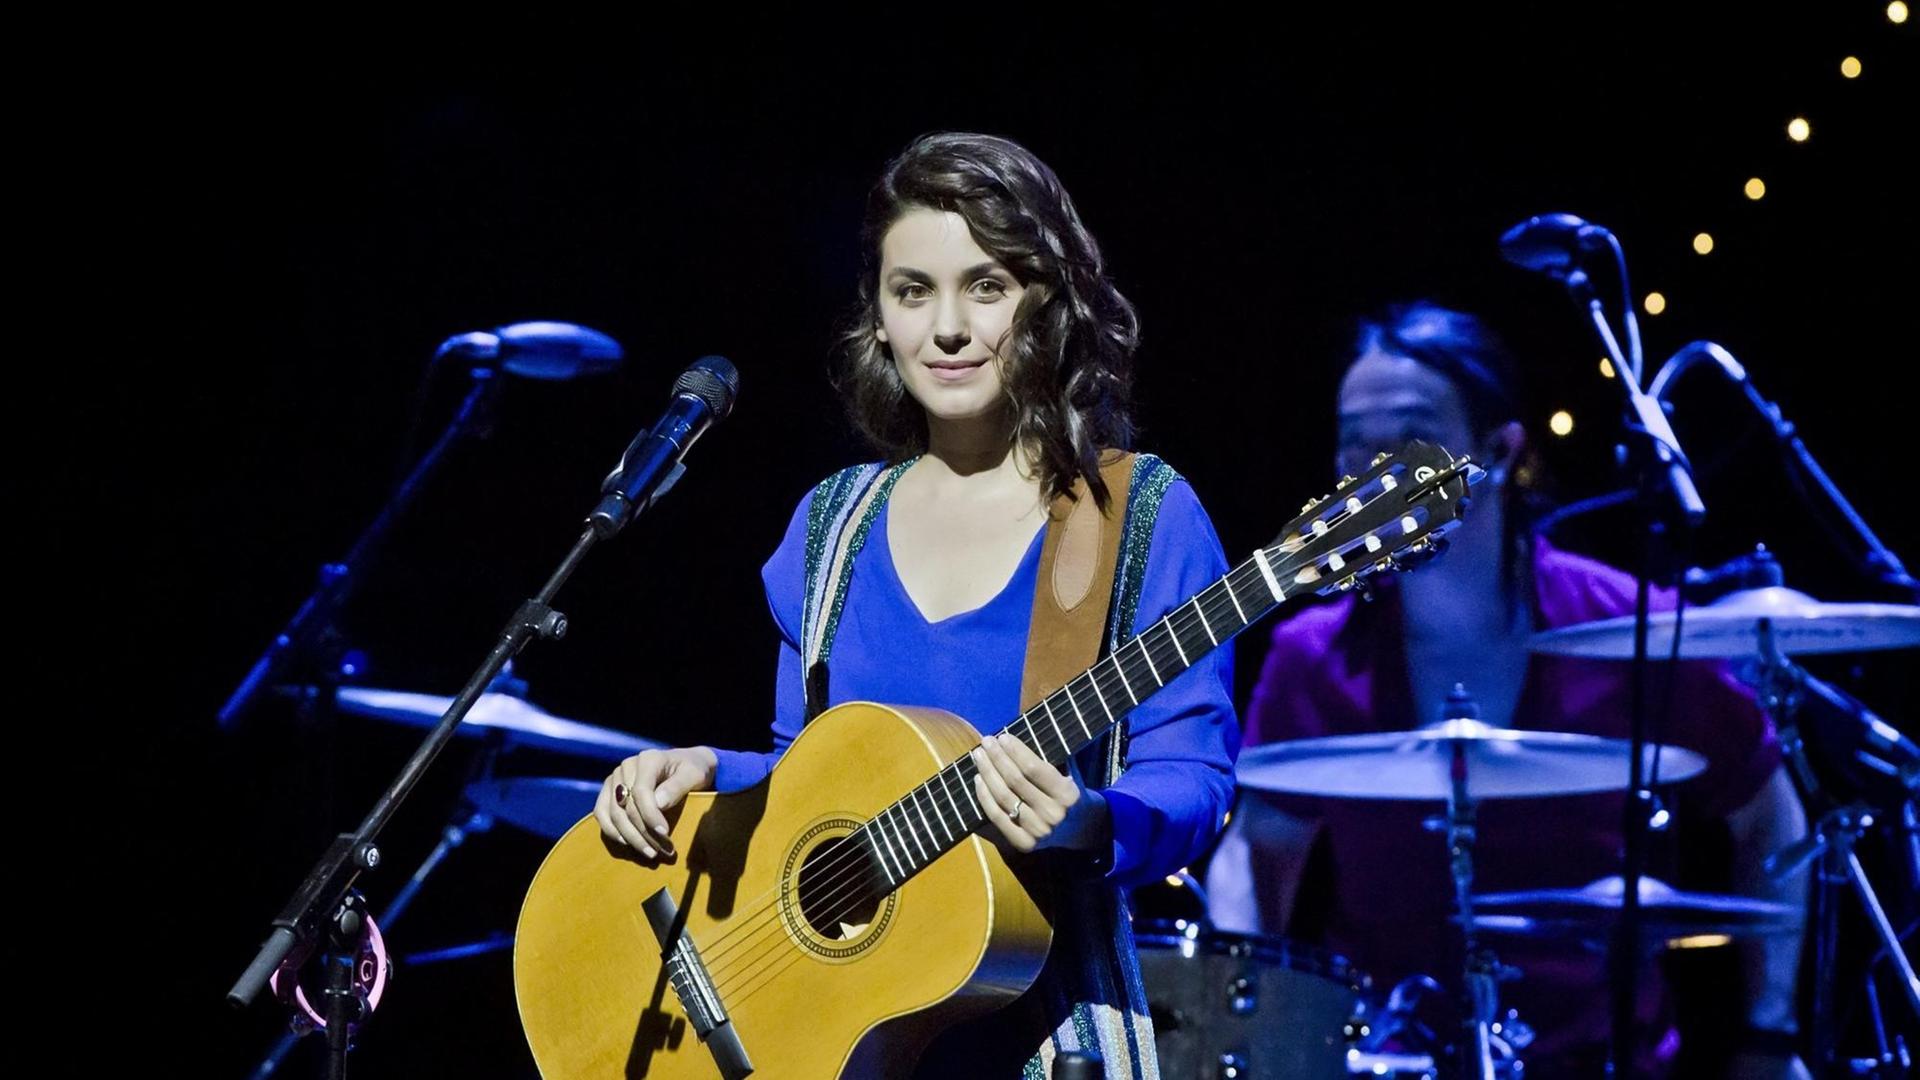 Saengerin Katie Melua bei einem Konzert im Theater am Potsdamer Platz in Berlin.